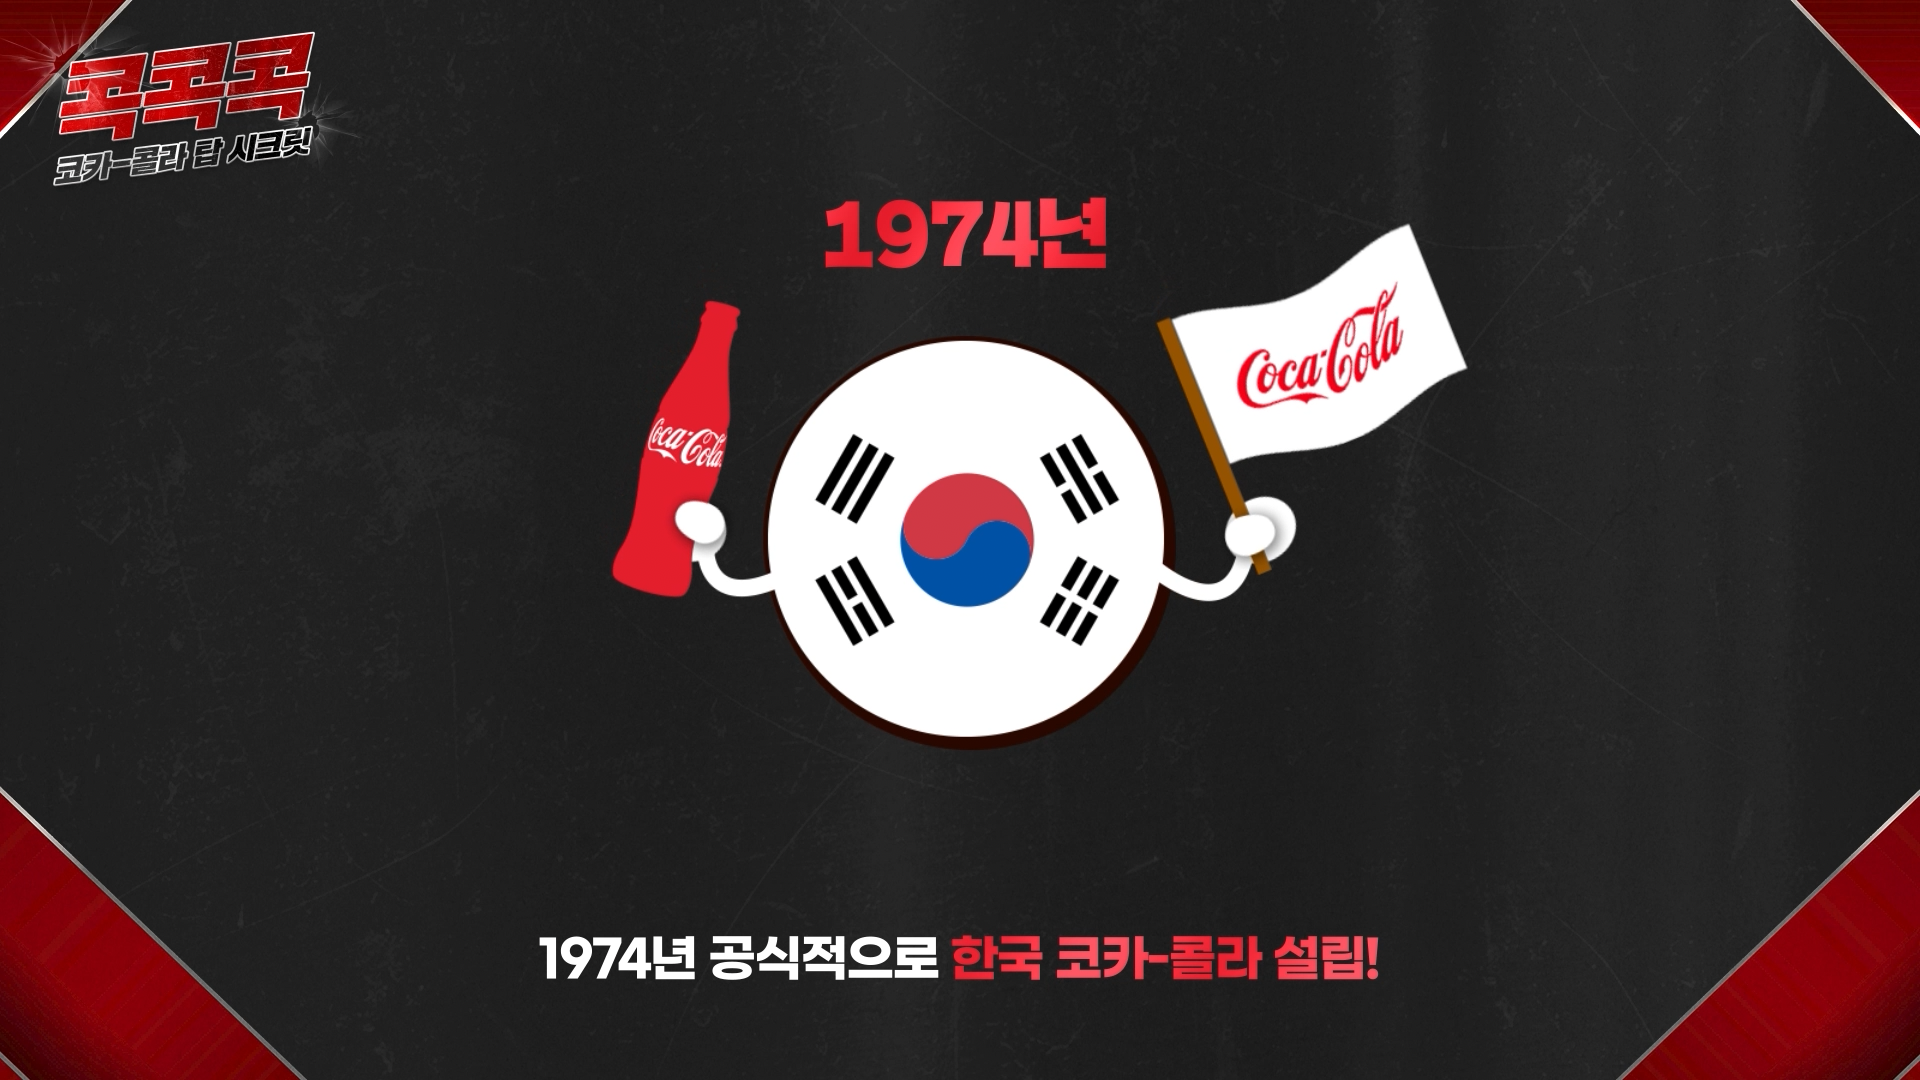 콕콕콕 12화 유튜브 영상 캡쳐본이다. 1974년 공식적으로 한국 코카-콜라 설립!이라는 자막과 관련 아이콘이 있다. 